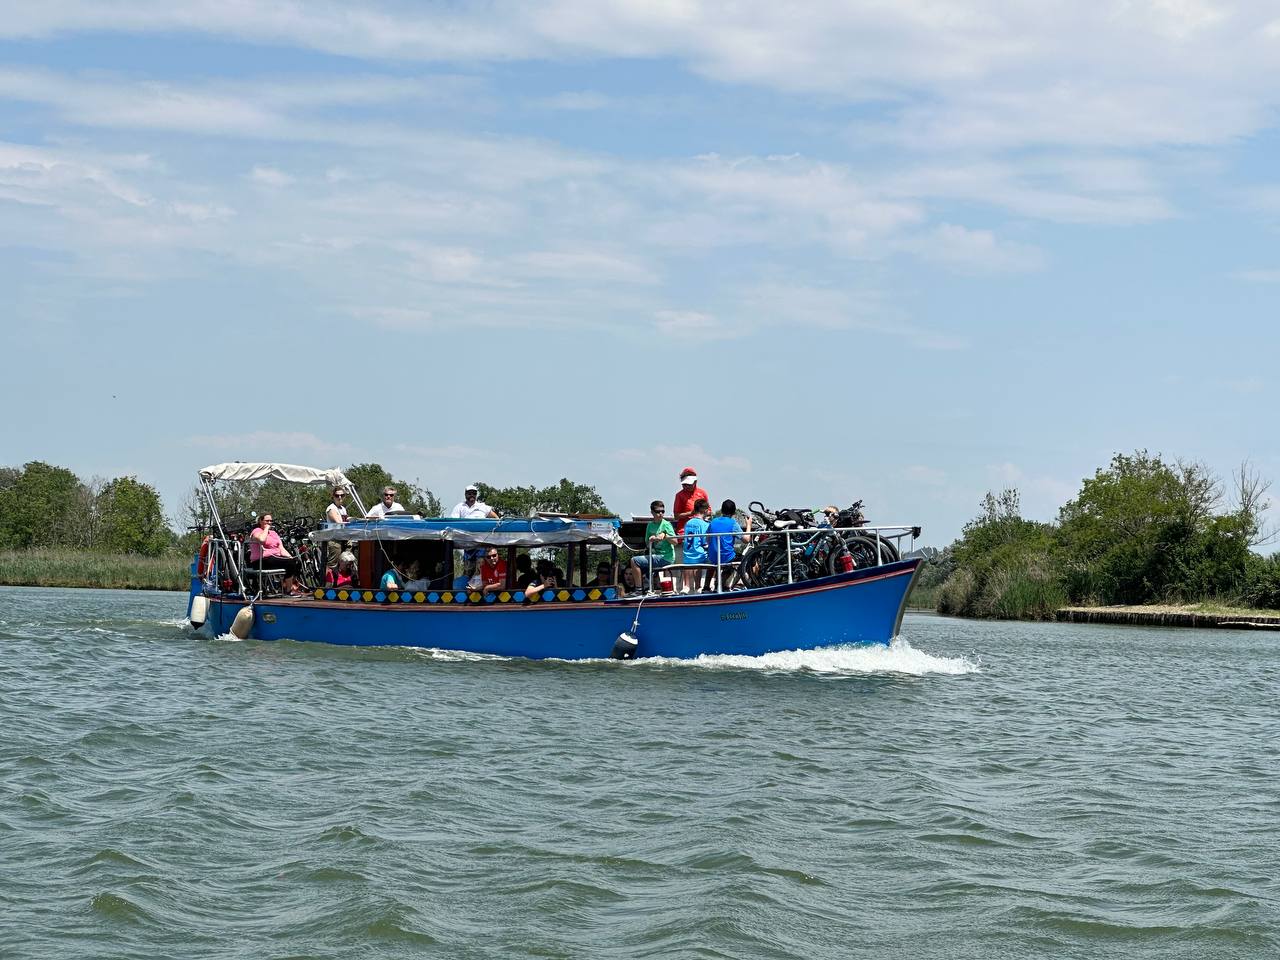 X-Lagoon, in barca (+bici) da Caorle a Bibione